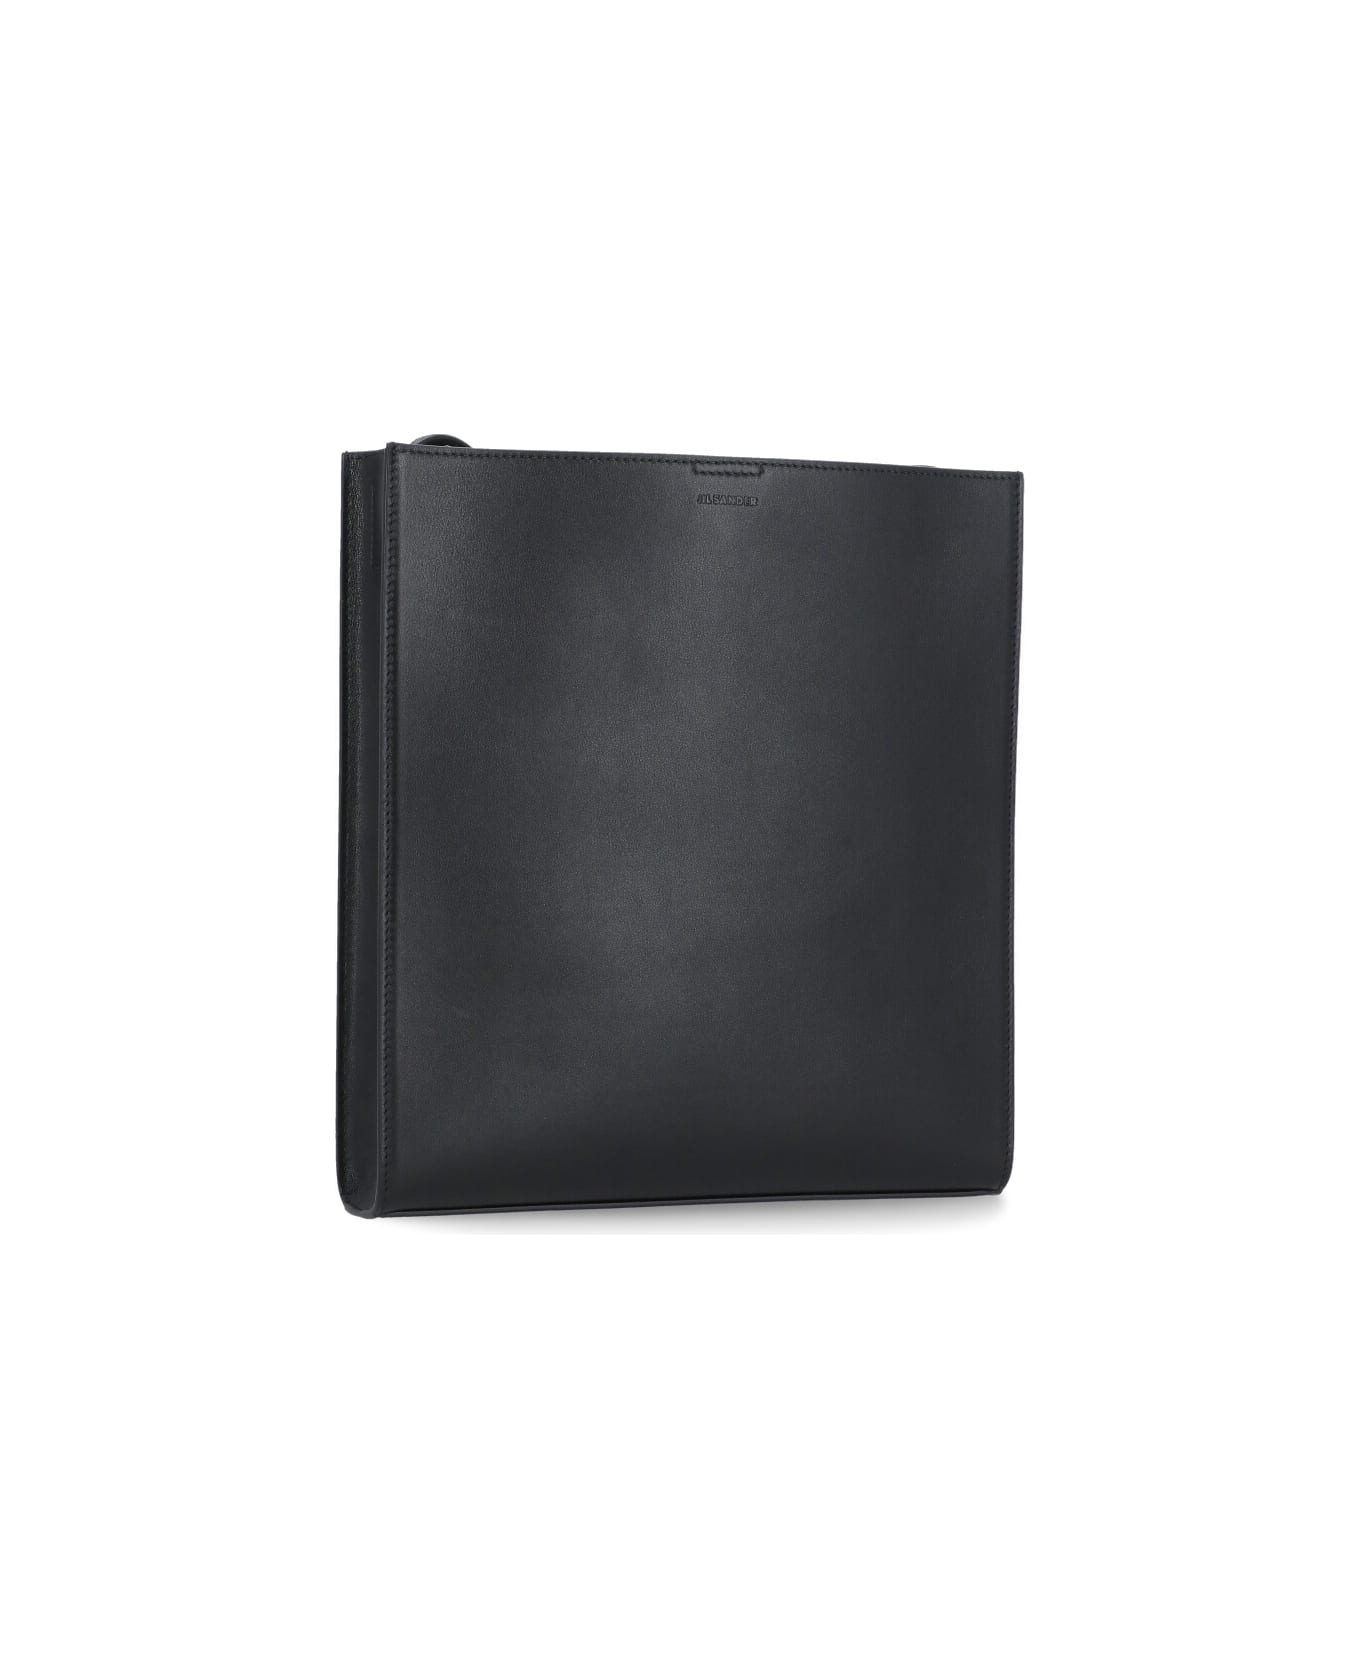 Jil Sander Tangle Medium Shoulder Bag - Black